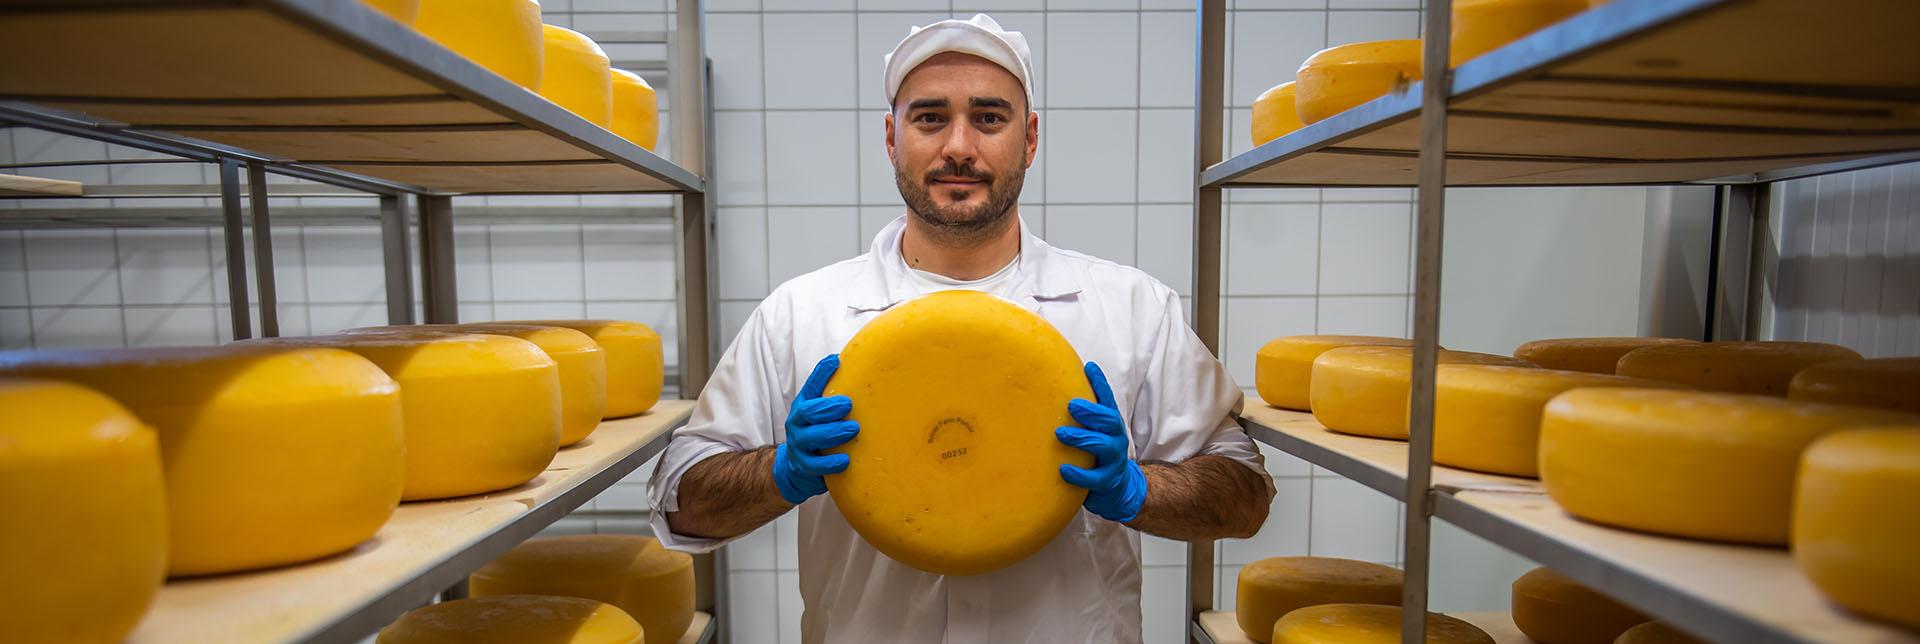 Hihetetlen! Budapest mellett készül Európa egyik legjobb sajtja - Vince